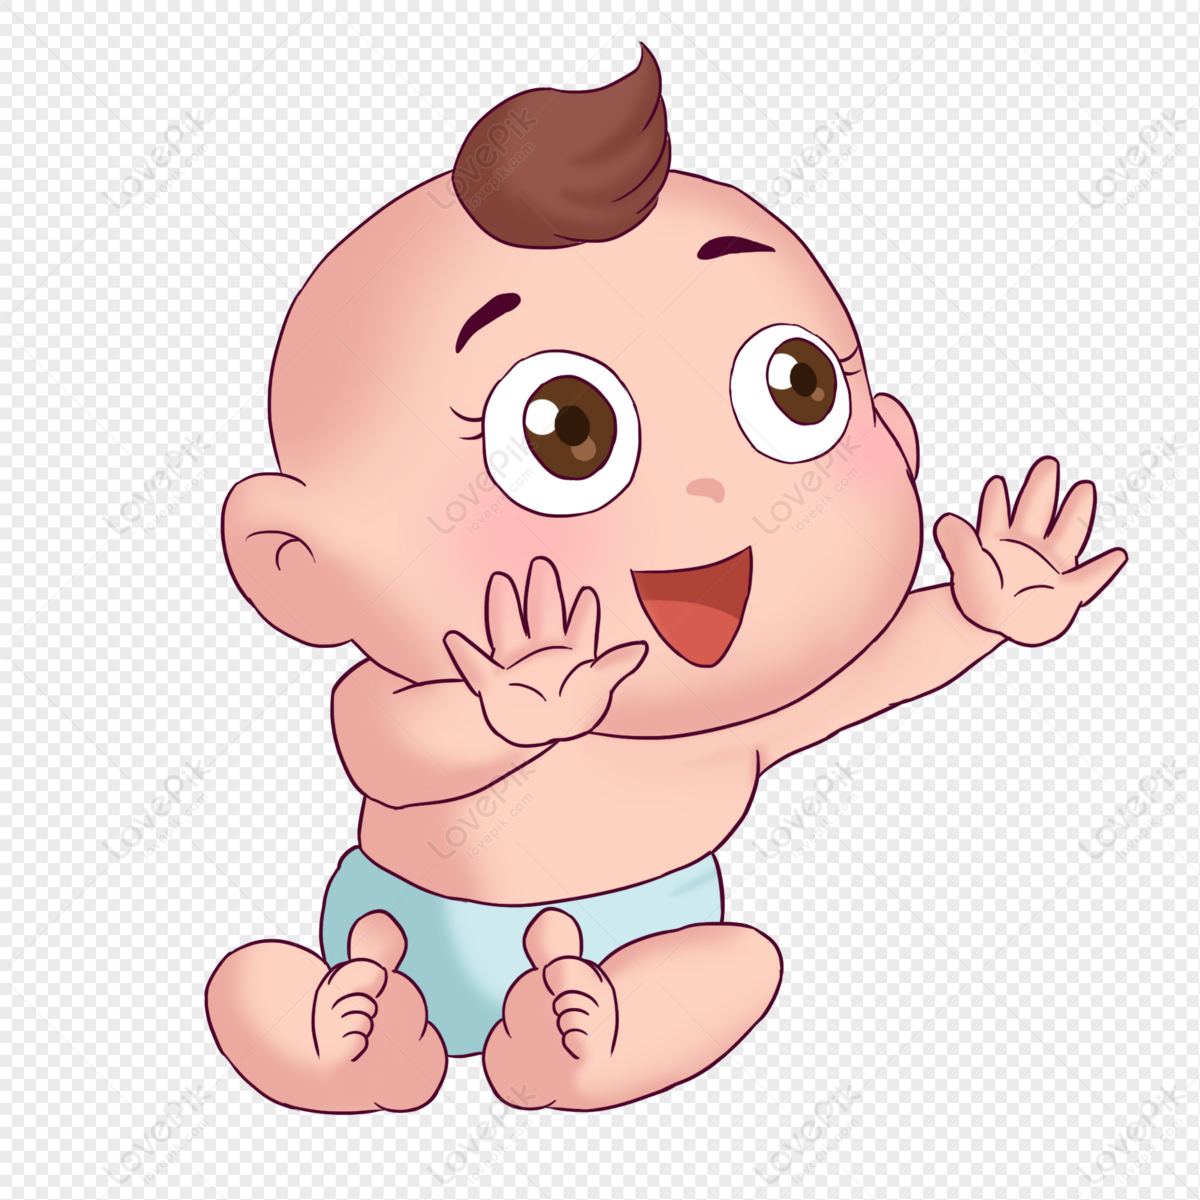 การ์ตูนเด็กทารกมีความสุขเอื้อมมือออก Png สำหรับการดาวน์โหลดฟรี - Lovepik